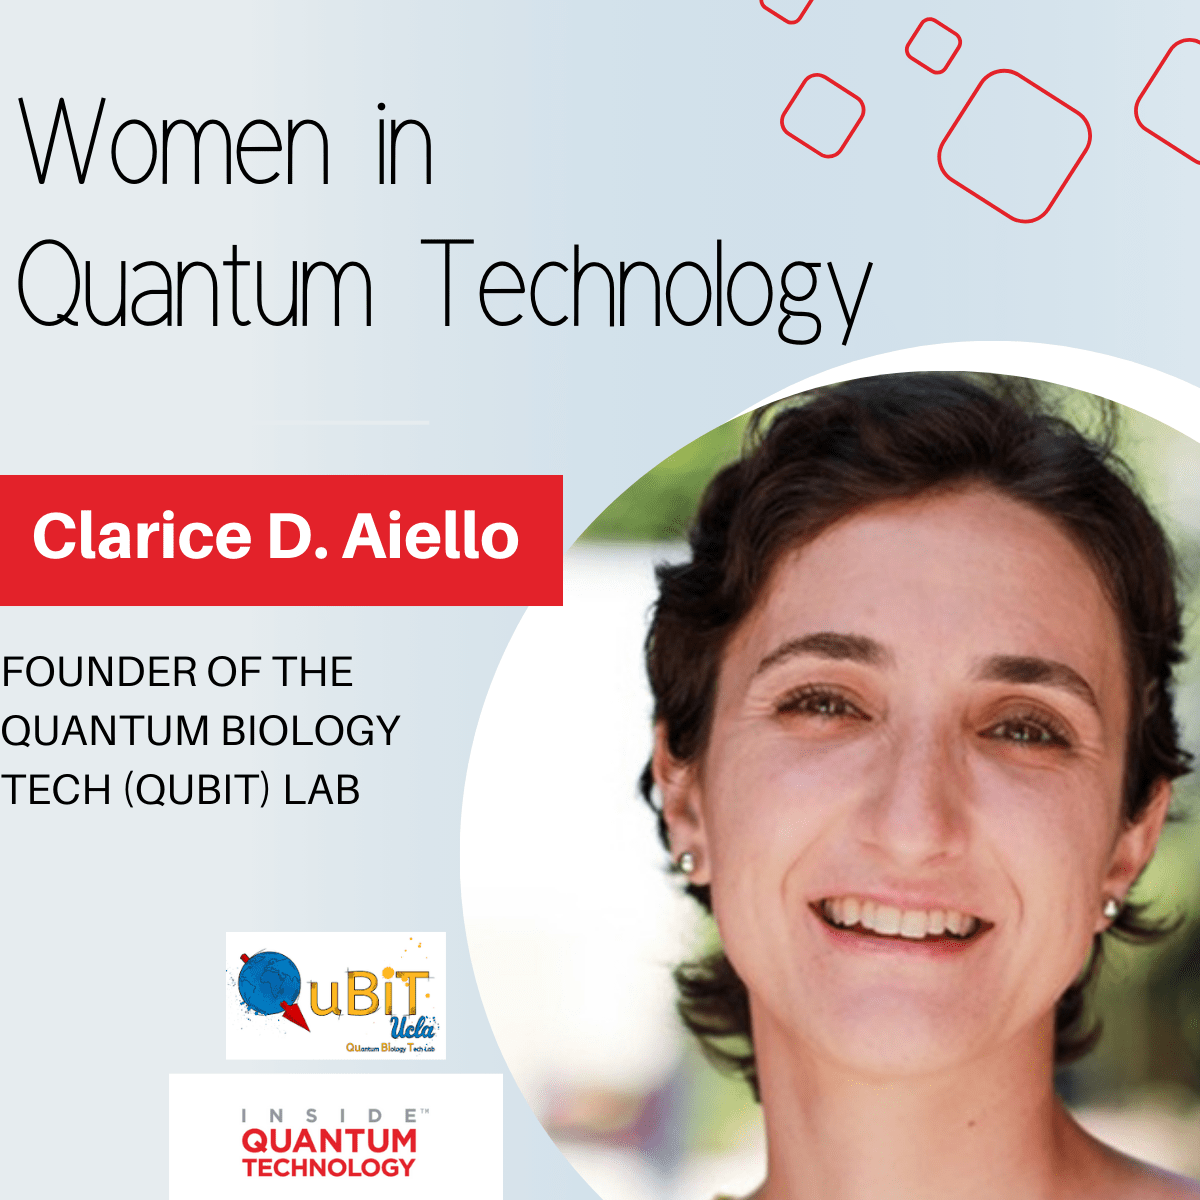 QuBiT Laboratuvarı'nın kurucusu Dr. Clarice D. Aiello, kuantum ekosistemine yaptığı yolculuğu anlatıyor.